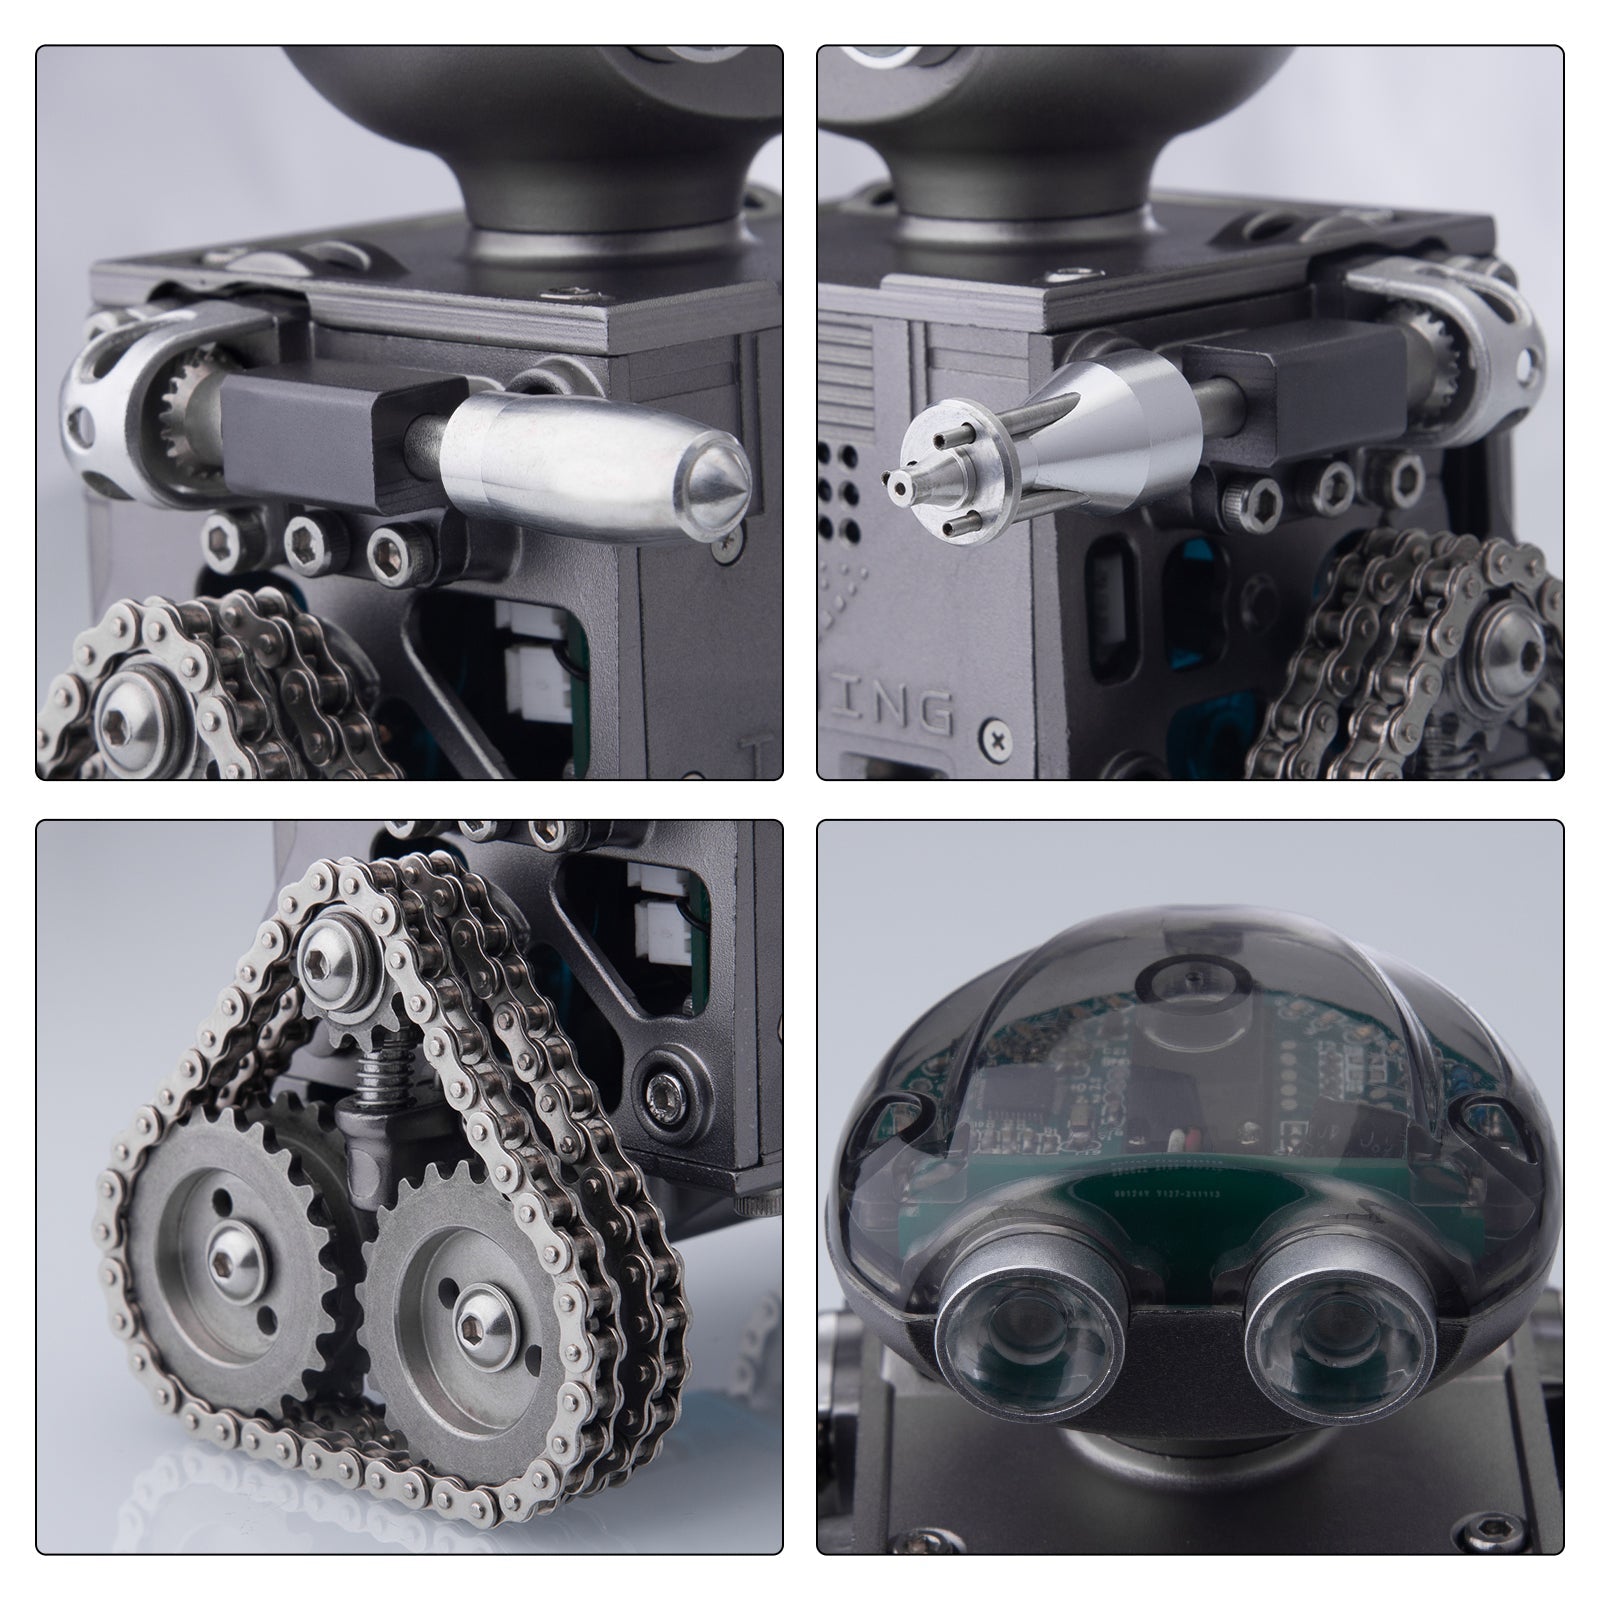 teching metal robot model kit that works